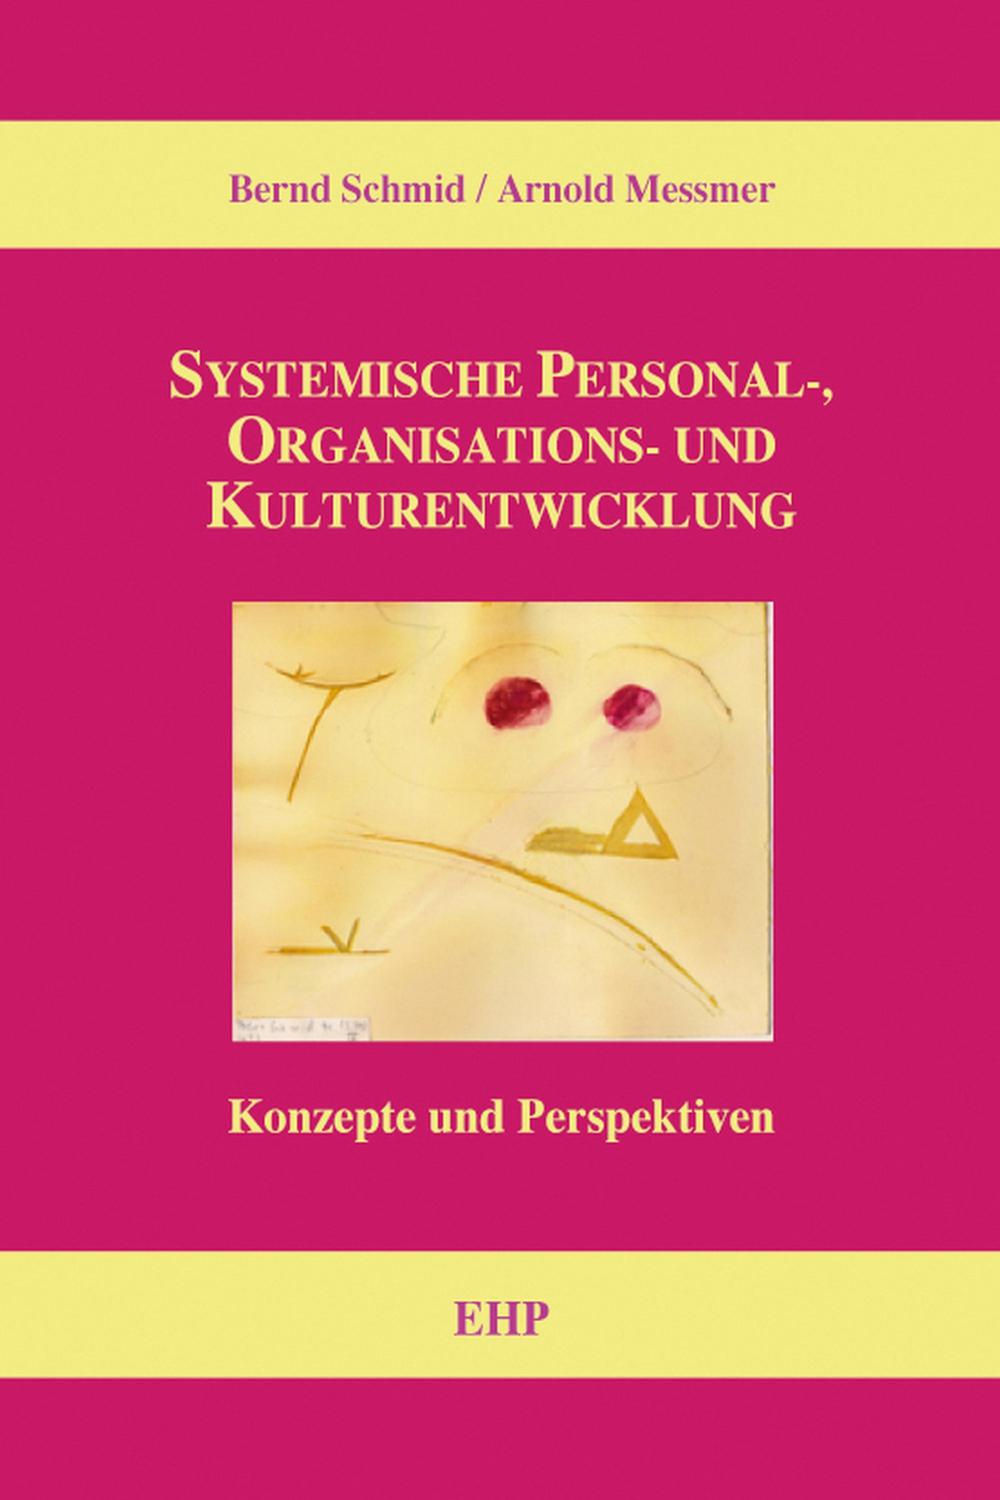 Systemische Personal-, Organisations- und Kulturentwicklung - Bernd Schmid, Arnold Messmer, Ingeborg Weidner